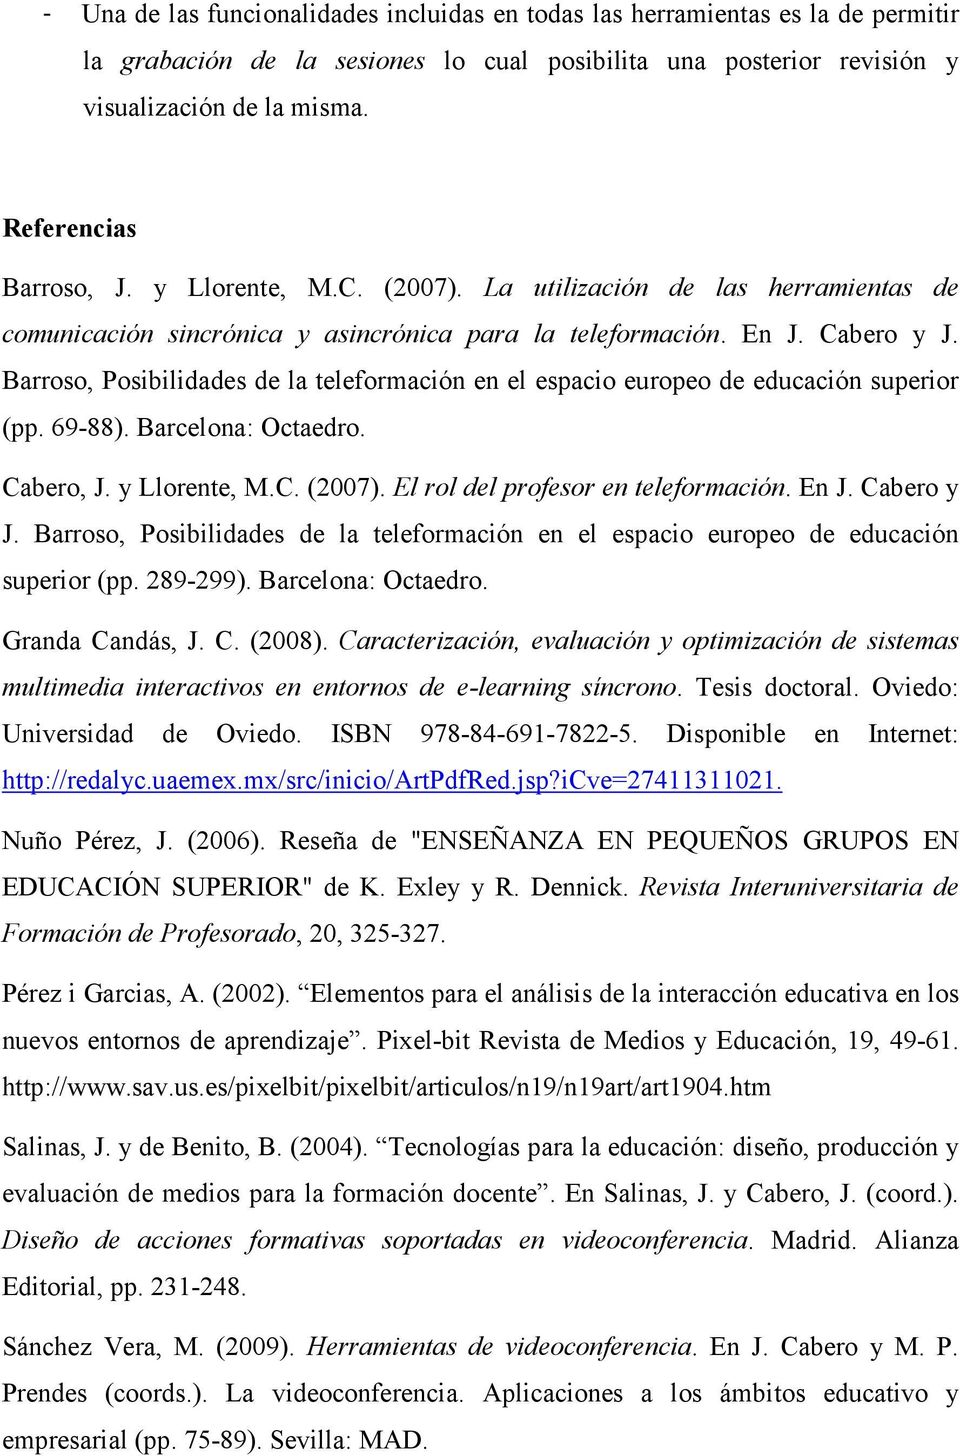 Barroso, Posibilidades de la teleformación en el espacio europeo de educación superior (pp. 69-88). Barcelona: Octaedro. Cabero, J. y Llorente, M.C. (2007). El rol del profesor en teleformación. En J.